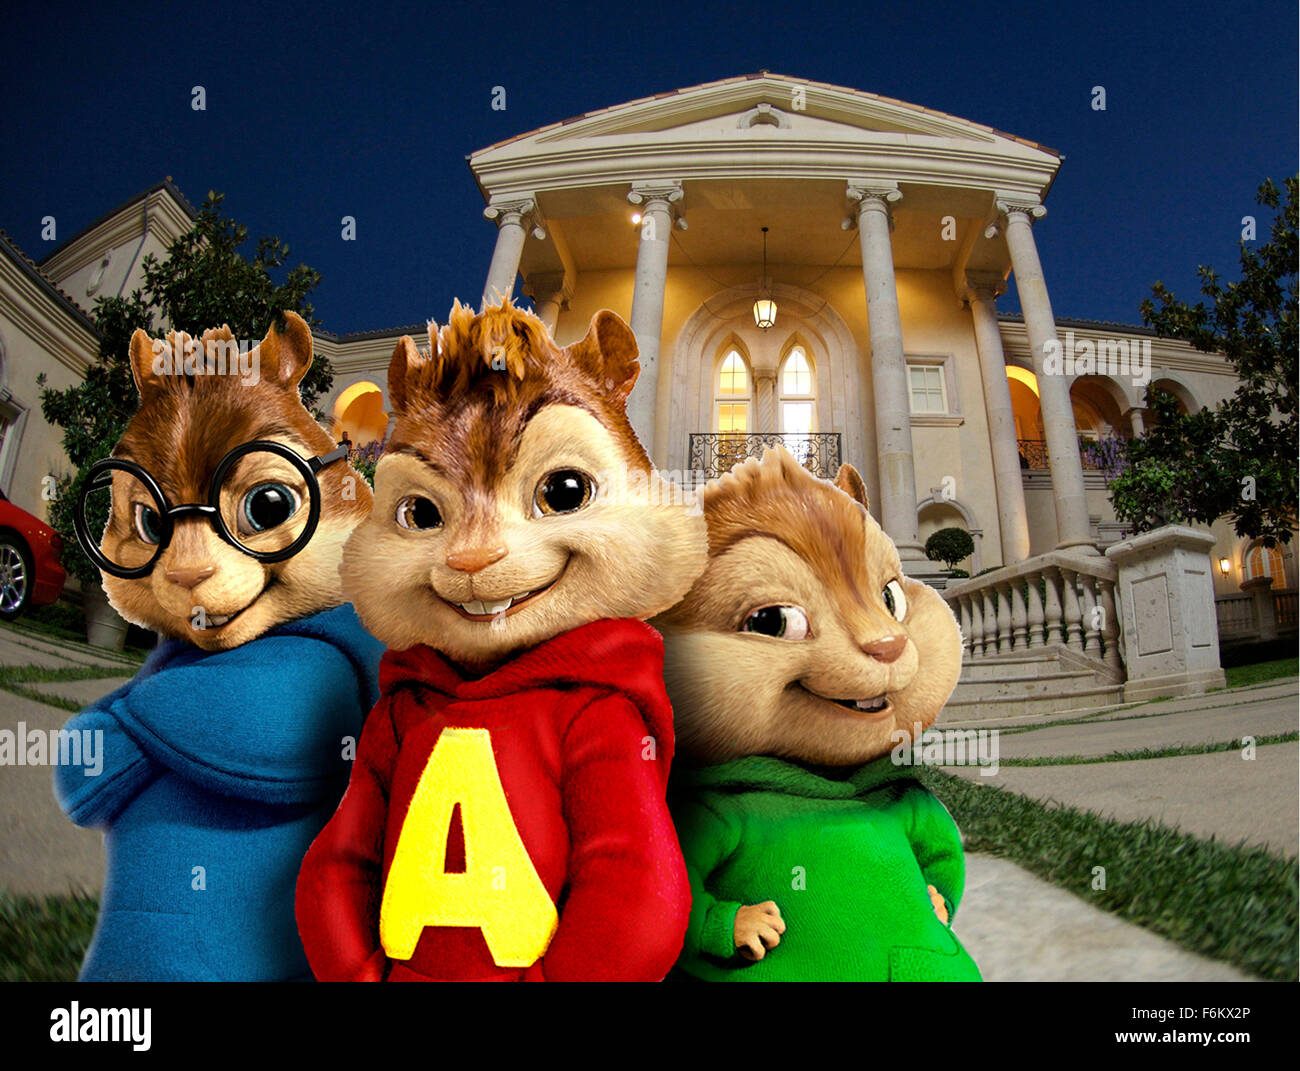 Disney+ Latinoamérica on X: Quédate con alguien que te mire como Teodoro,  Alvin y Simón miran sus pelis 🥺 Alvin y las ardillas 1, 2 y 3, disponibles  ahora. Solo en #DisneyPlus.